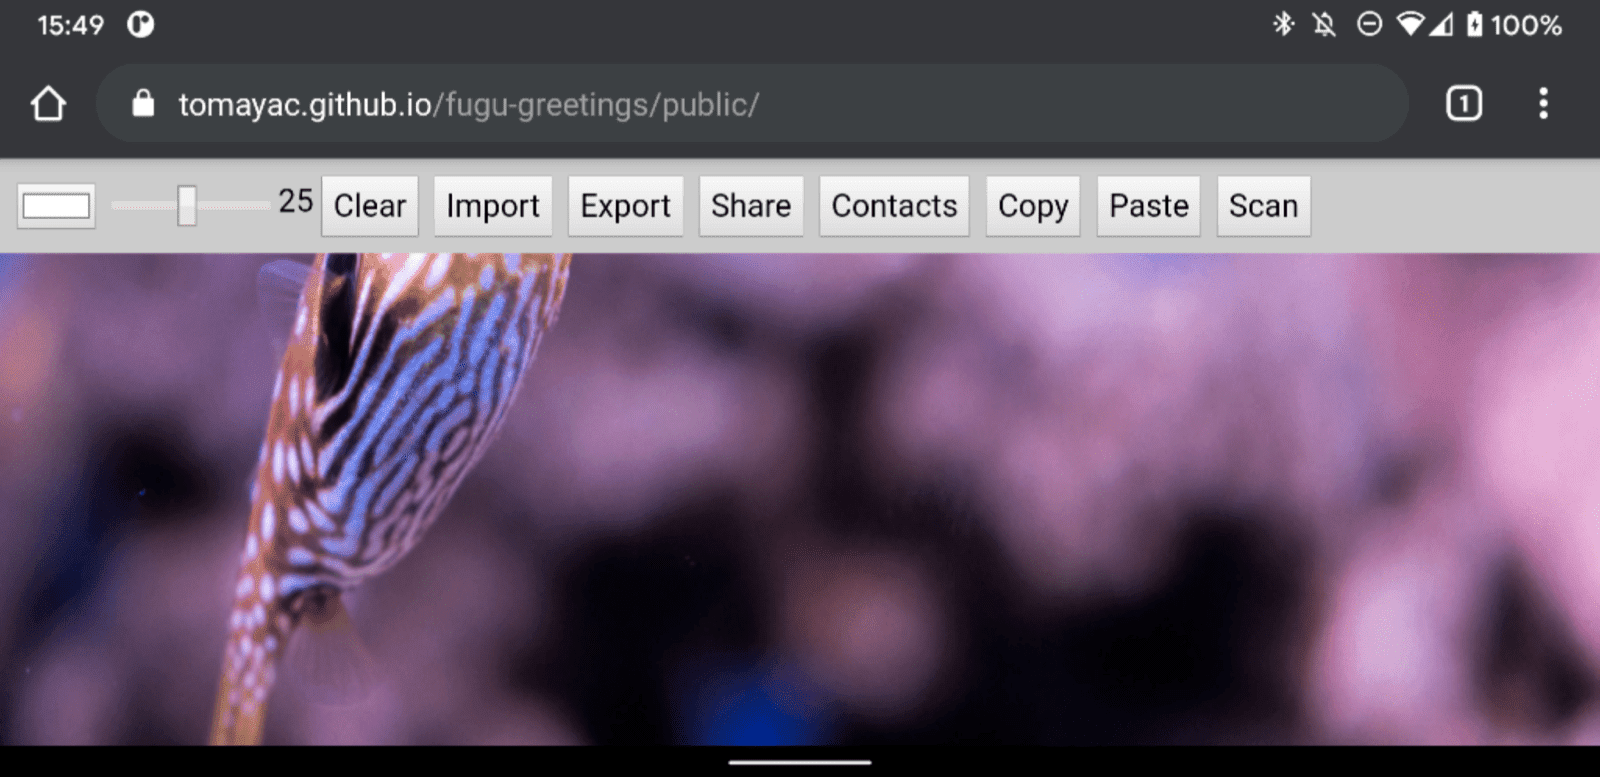 Aplikacja Fugu Greetings uruchomiona w Chrome na Androidzie, pokazująca wiele dostępnych funkcji.